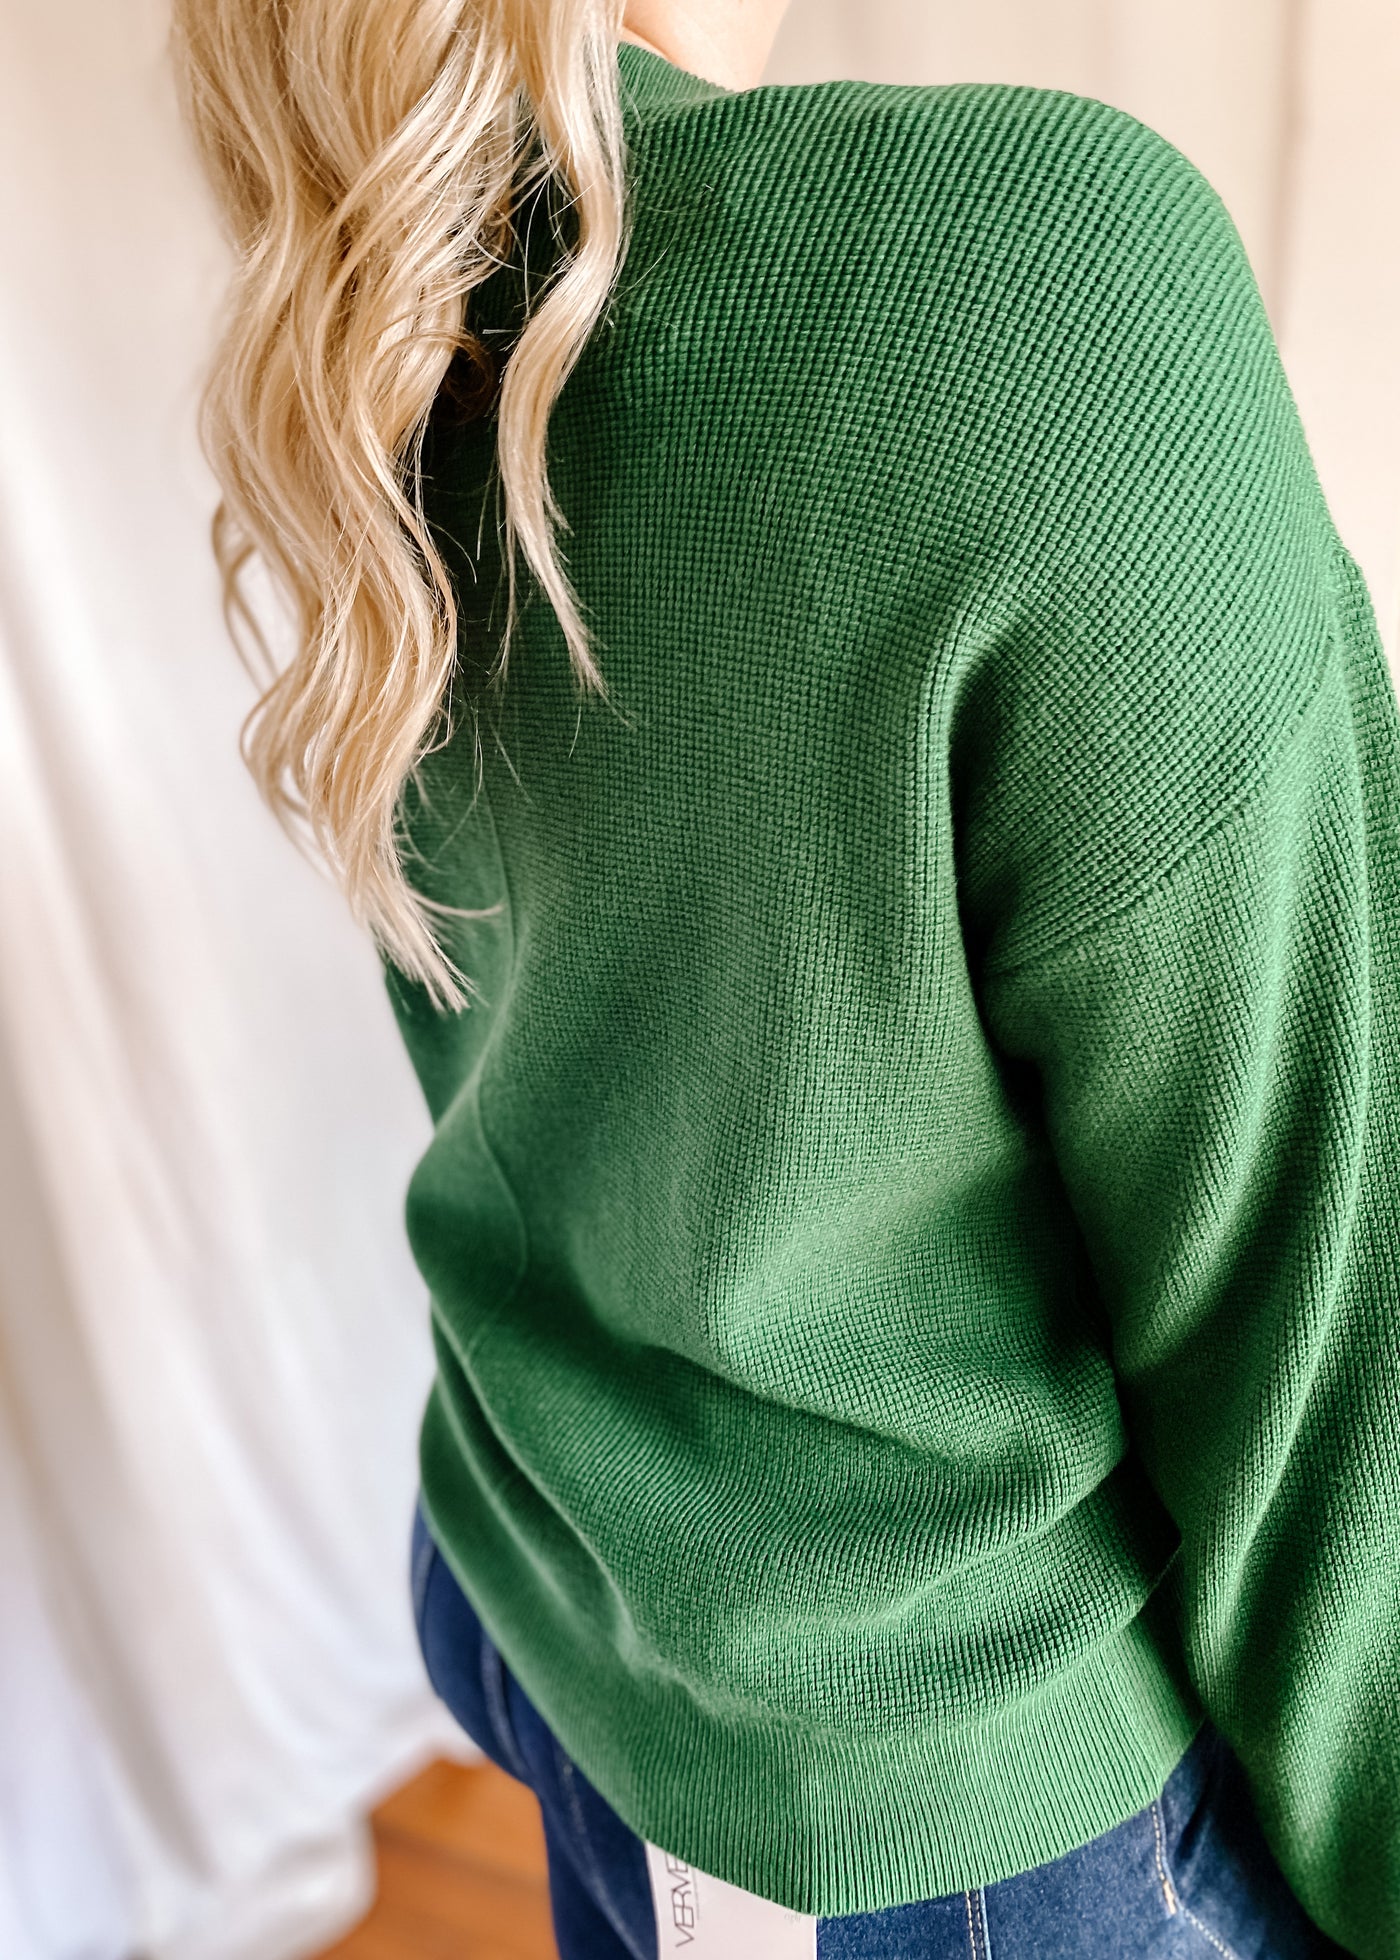 Boyfriend Soft Sweater Cardigan in Dark Green